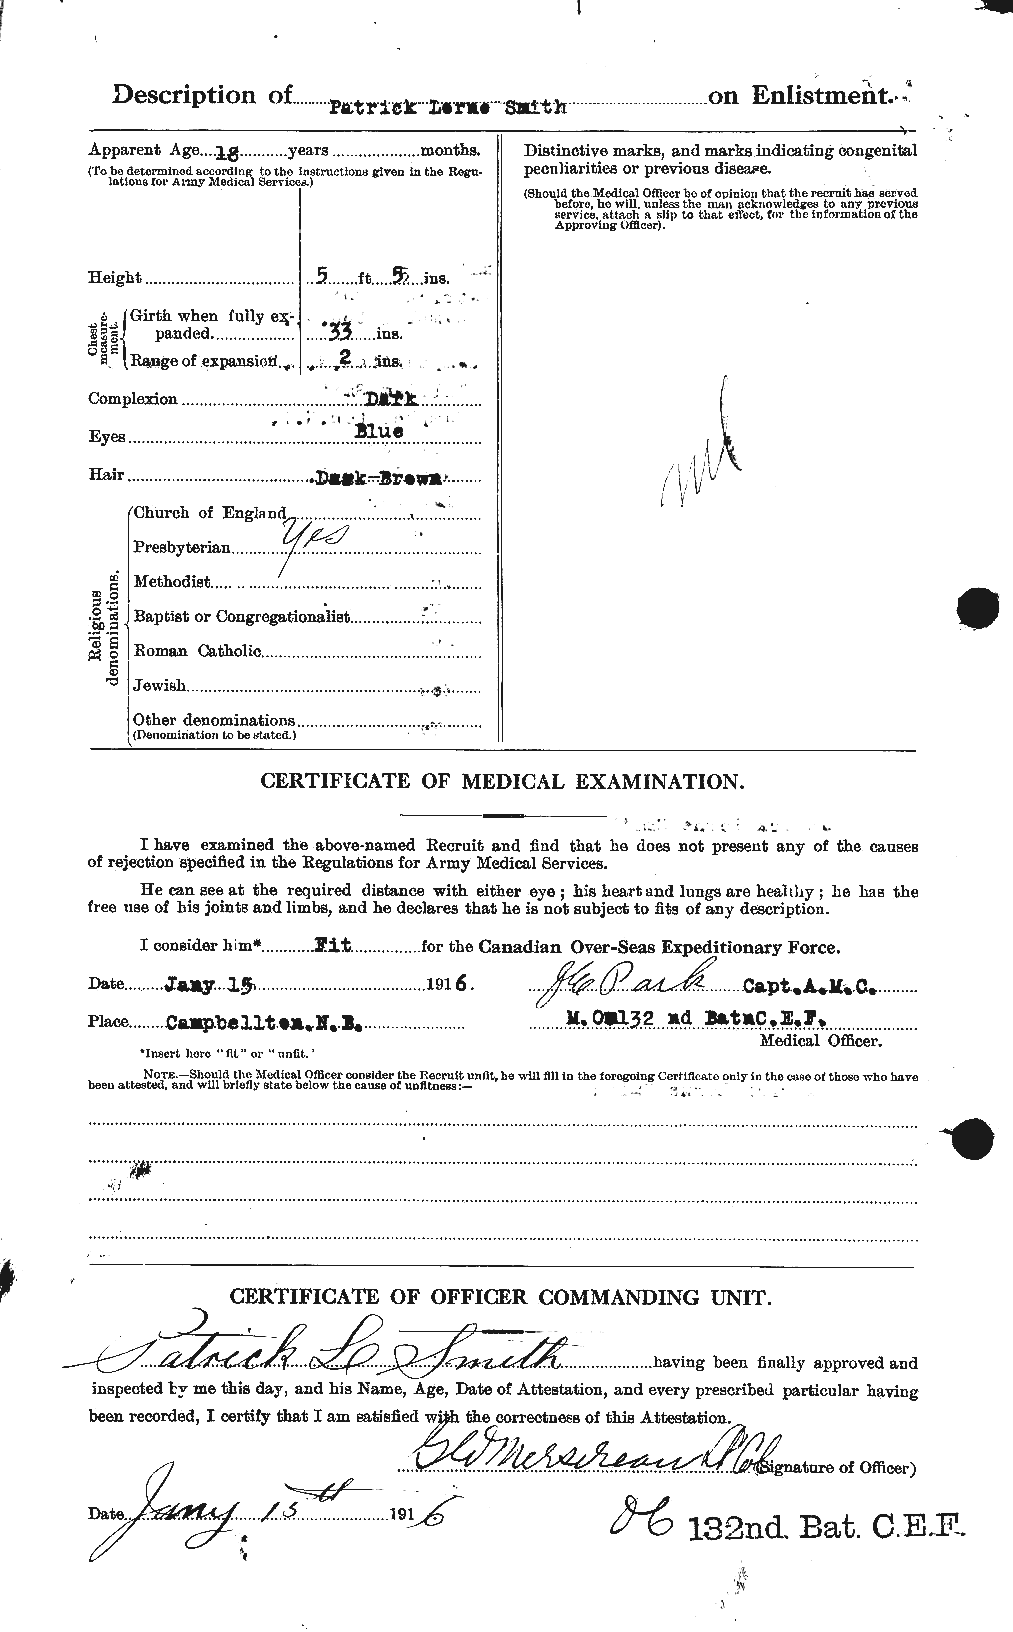 Dossiers du Personnel de la Première Guerre mondiale - CEC 622136b